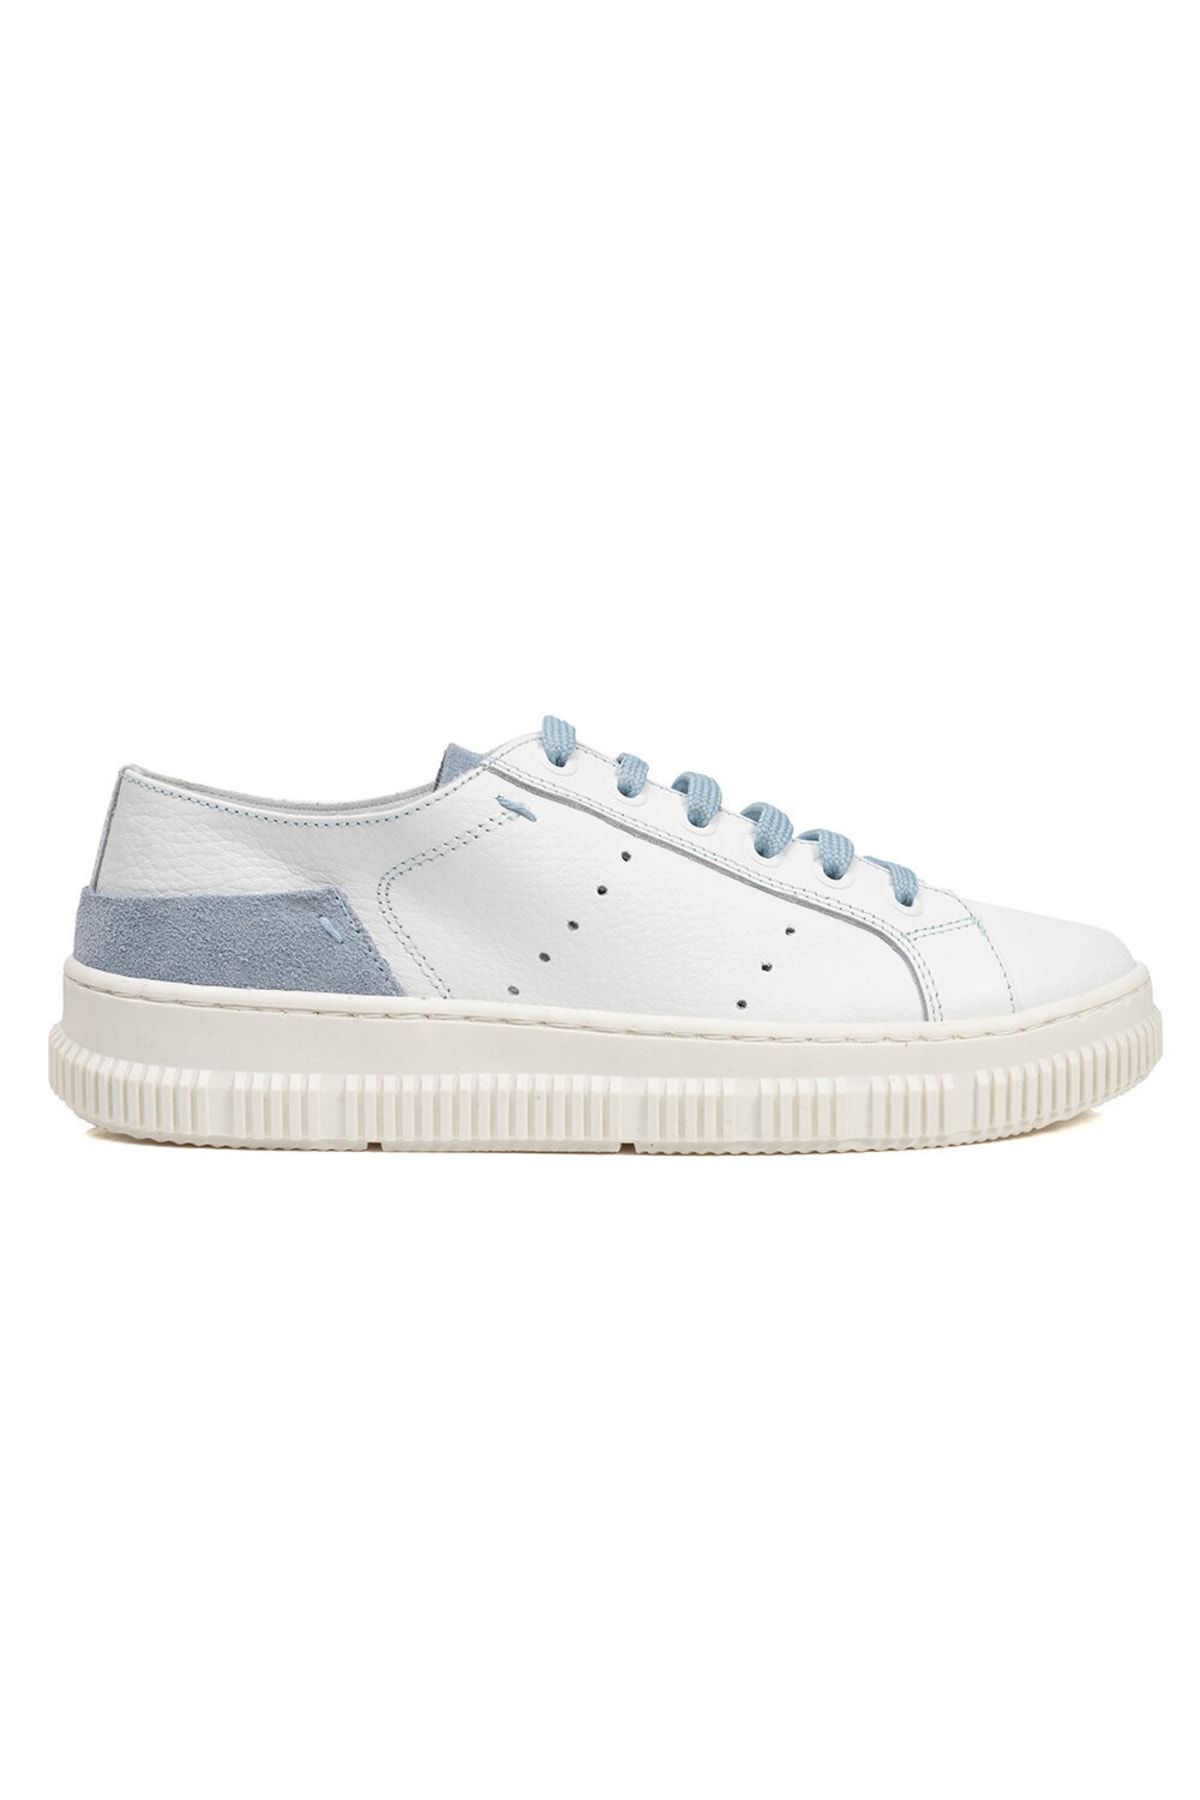 Greyder Kadın Beyaz Mavi Hakiki Deri Sneaker Ayakkabı 3y2ca50753